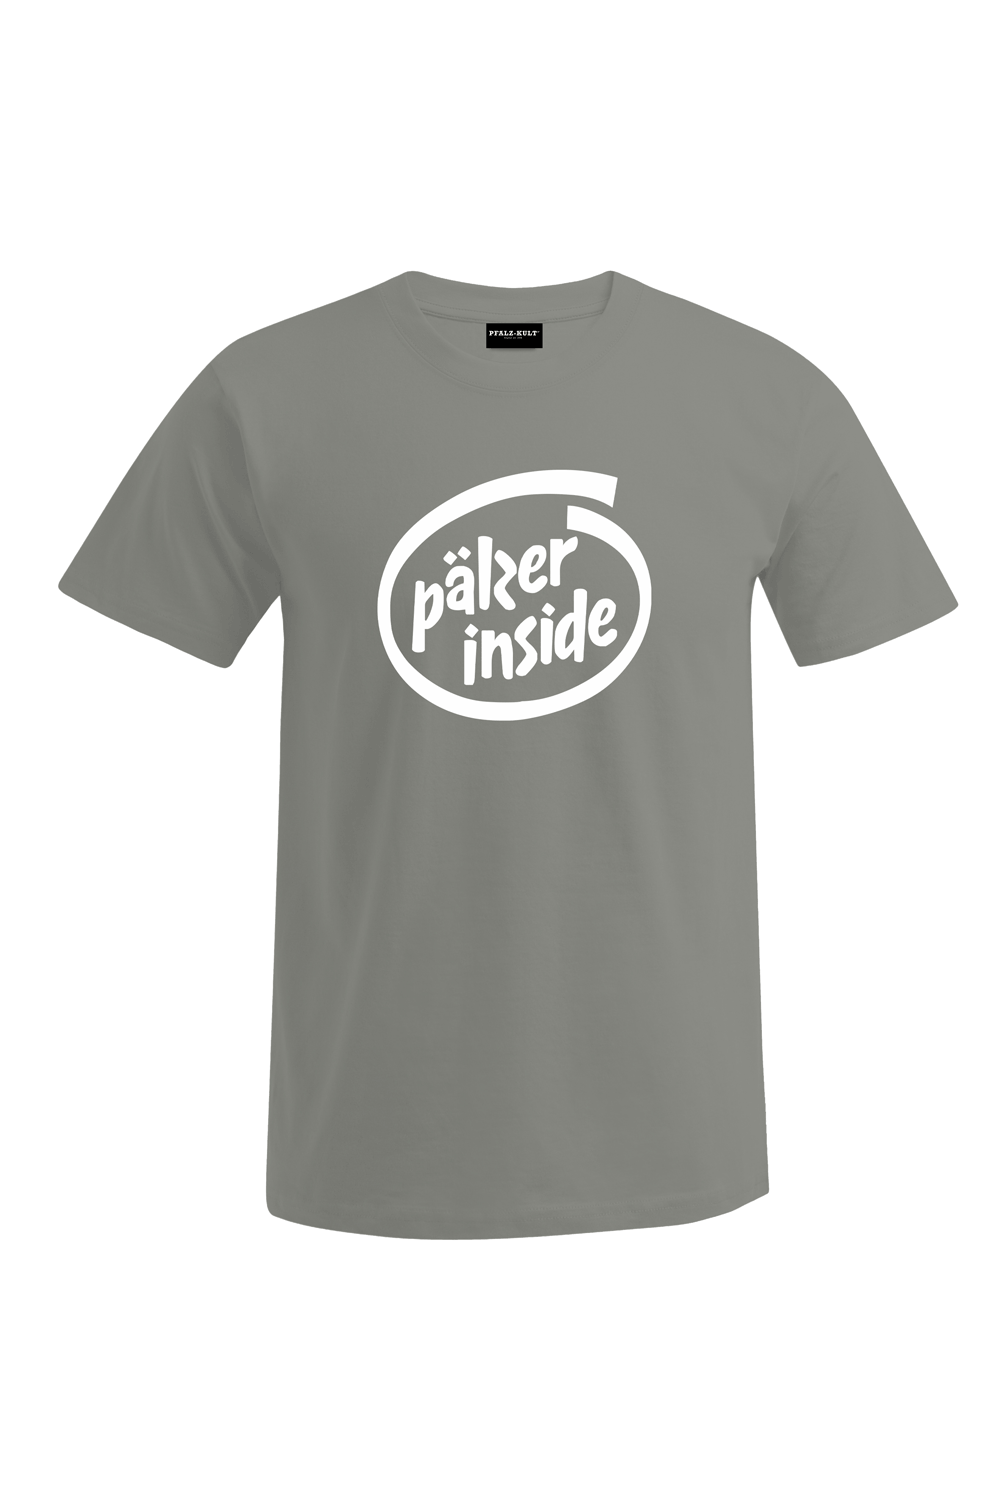 Pälzer Inside - Männer T-Shirt - Unisex